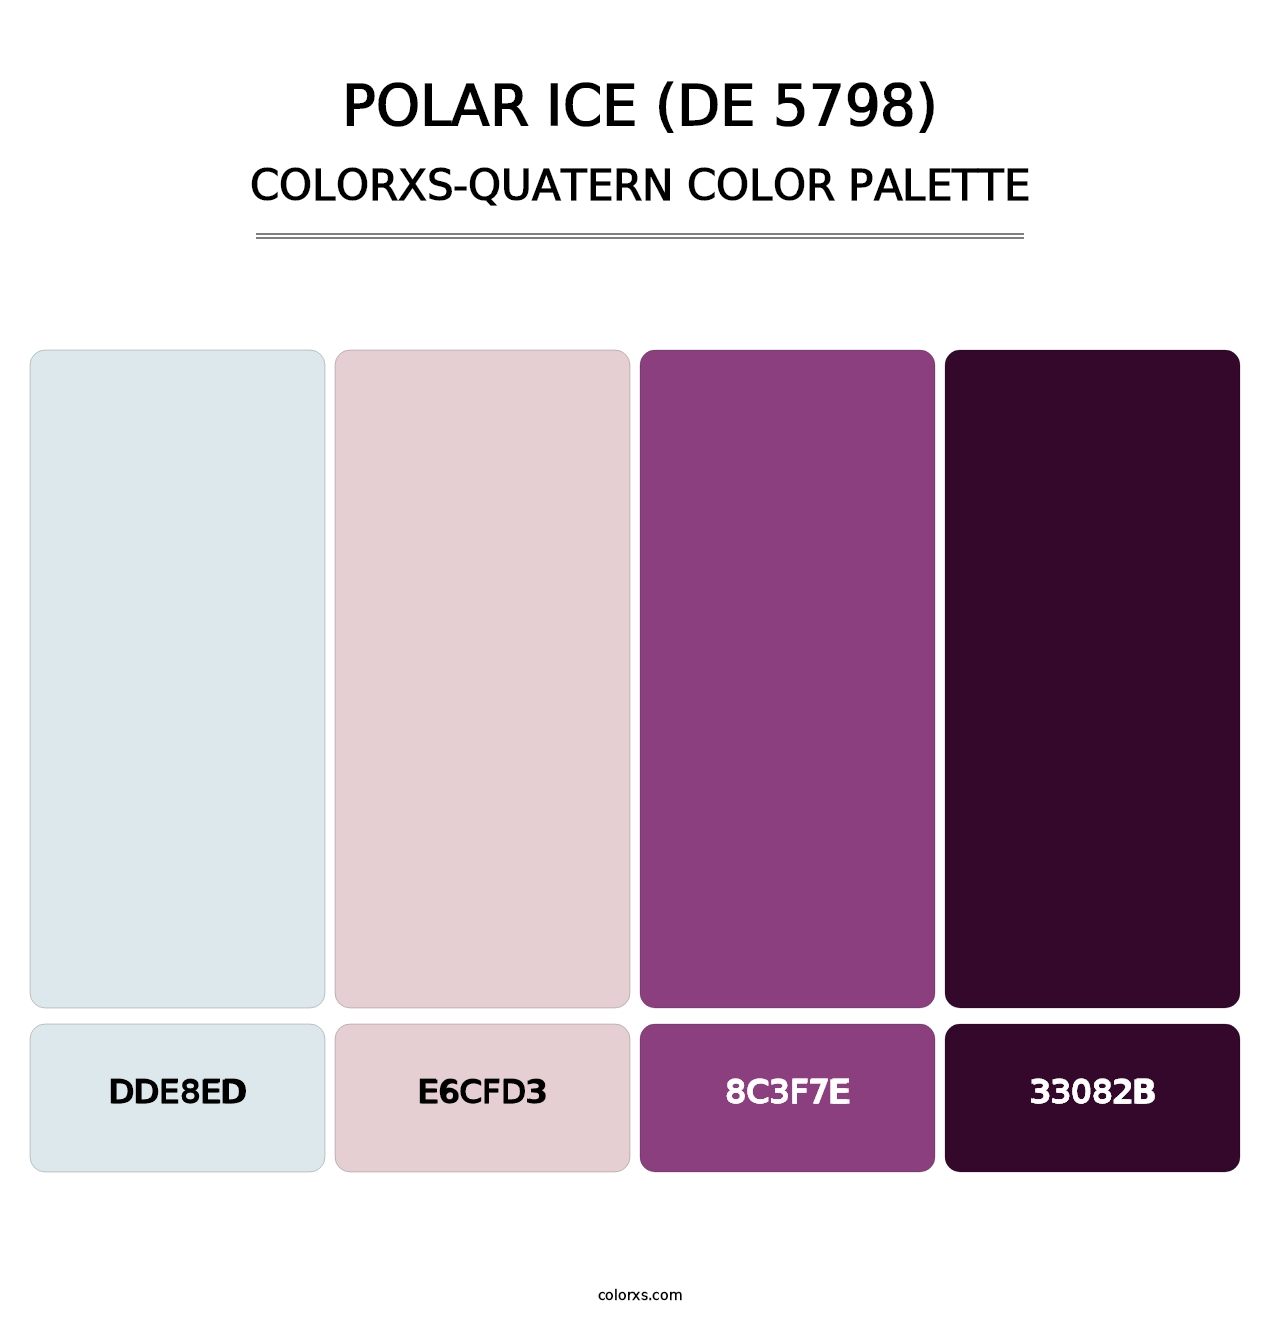 Polar Ice (DE 5798) - Colorxs Quatern Palette